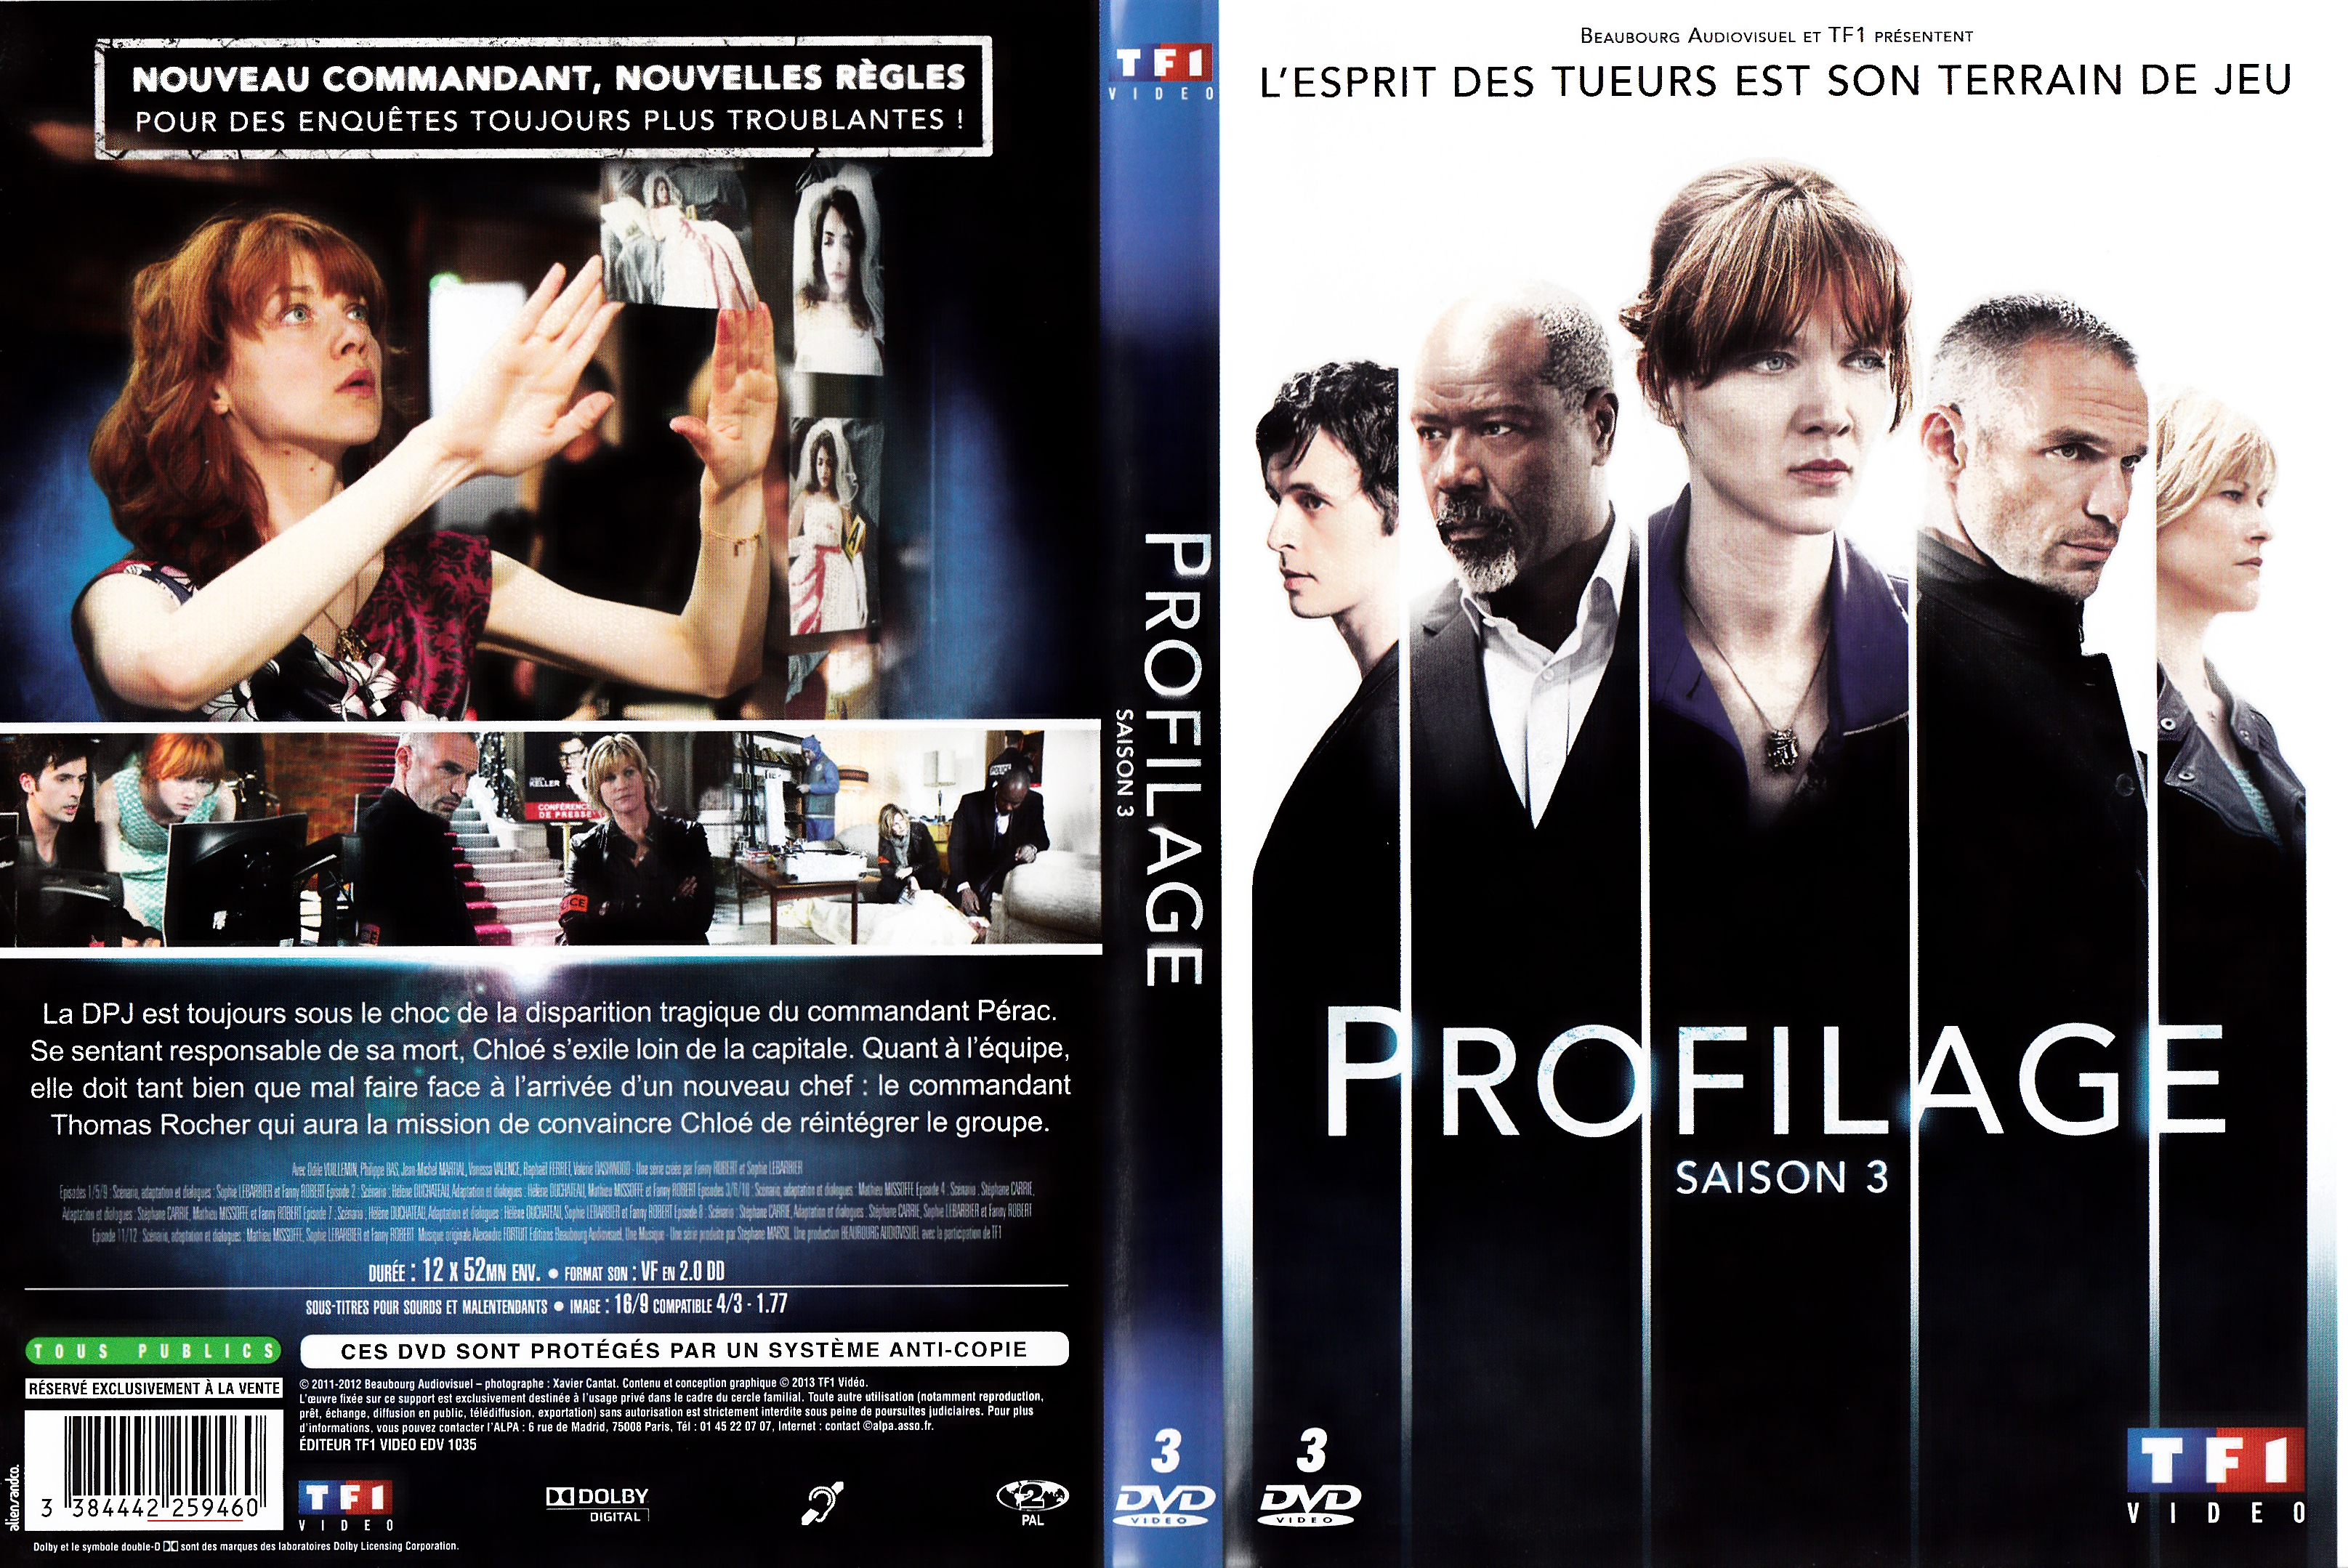 Jaquette DVD Profilage saison 3